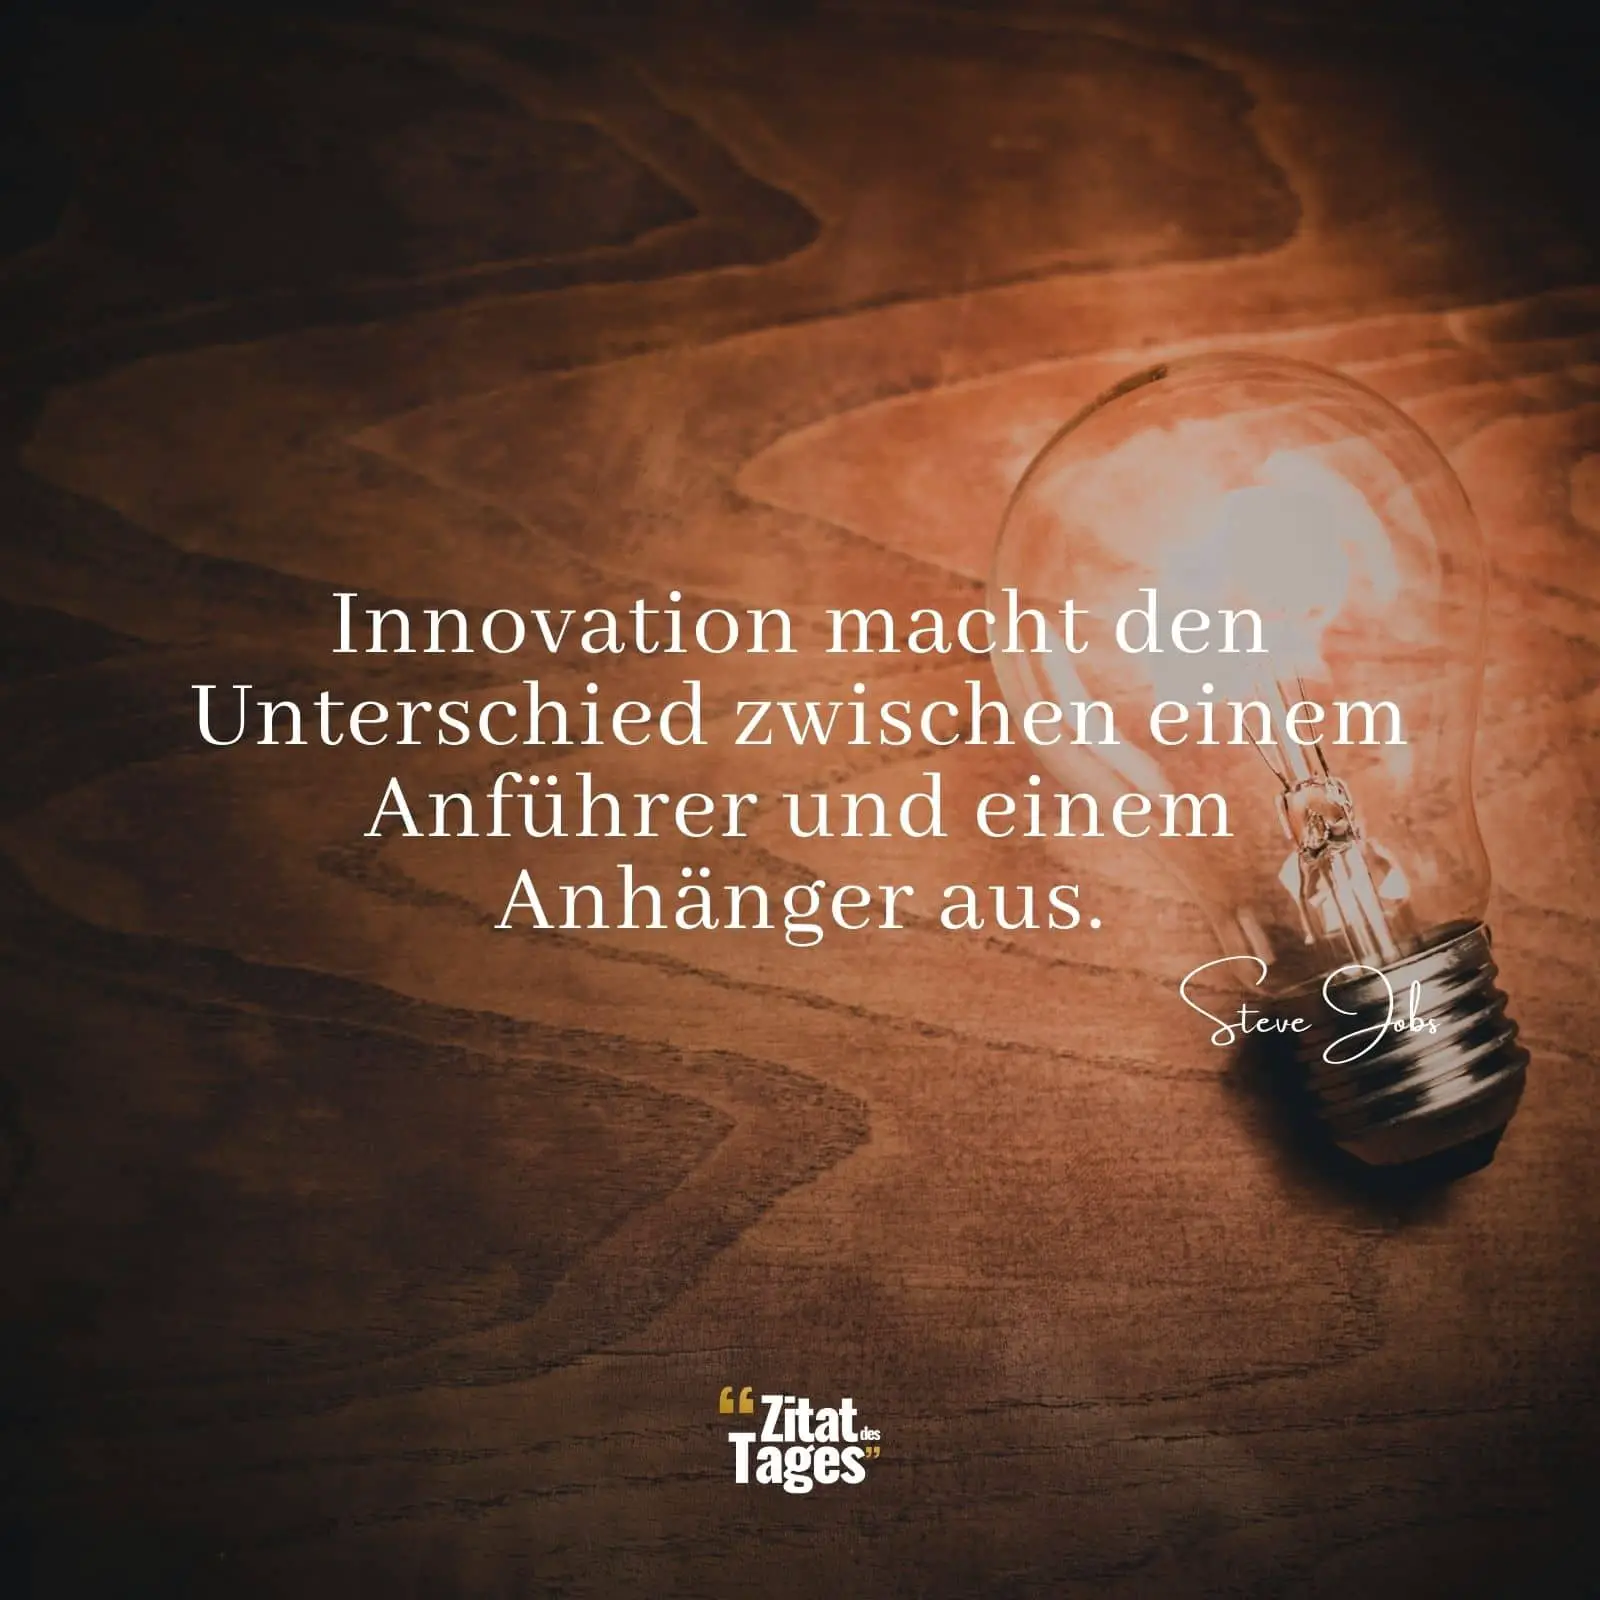 Innovation macht den Unterschied zwischen einem Anführer und einem Anhänger aus. - Steve Jobs